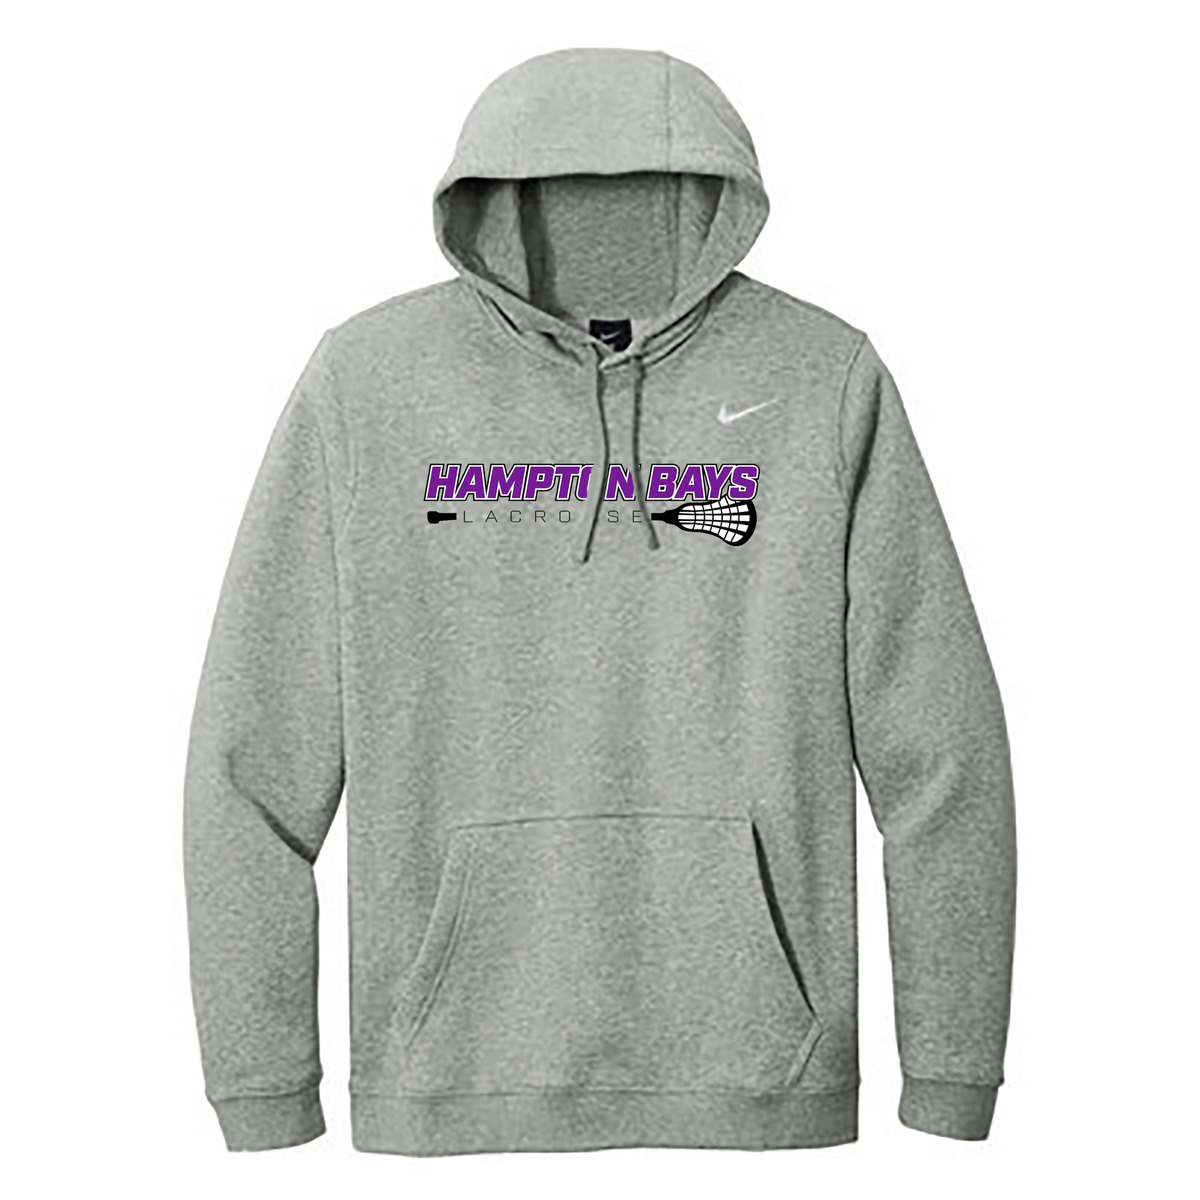 Hampton Bays Lacrosse Nike Fleece Sweatshirt